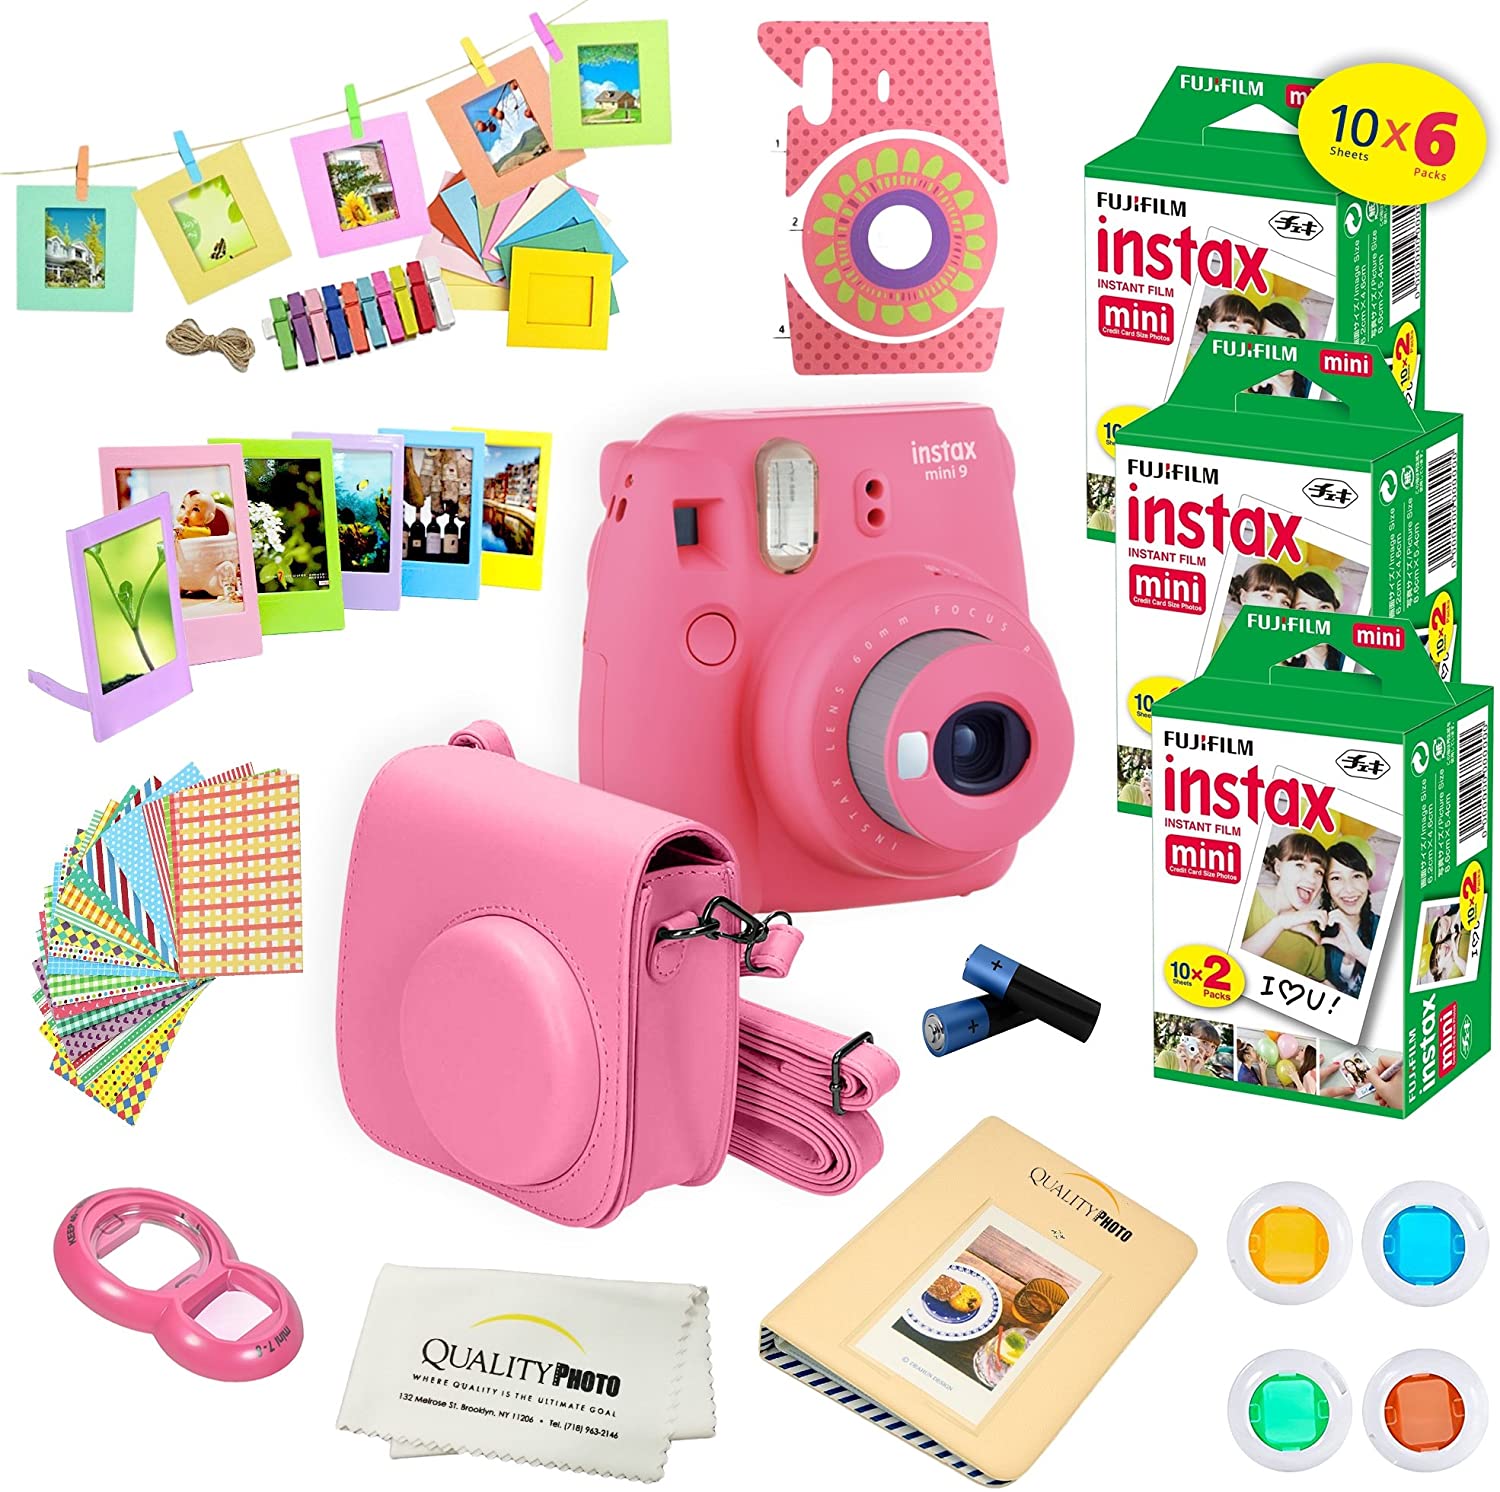 Fujifilm Instax Mini 9 Instant Camera Flamingo Pink with Fujifilm Instax Mini 9 Instant Films (60 Pack) + A14 Pc Deluxe Bundle For Fujifilm Instax Mini 9 Camera - image 1 of 7